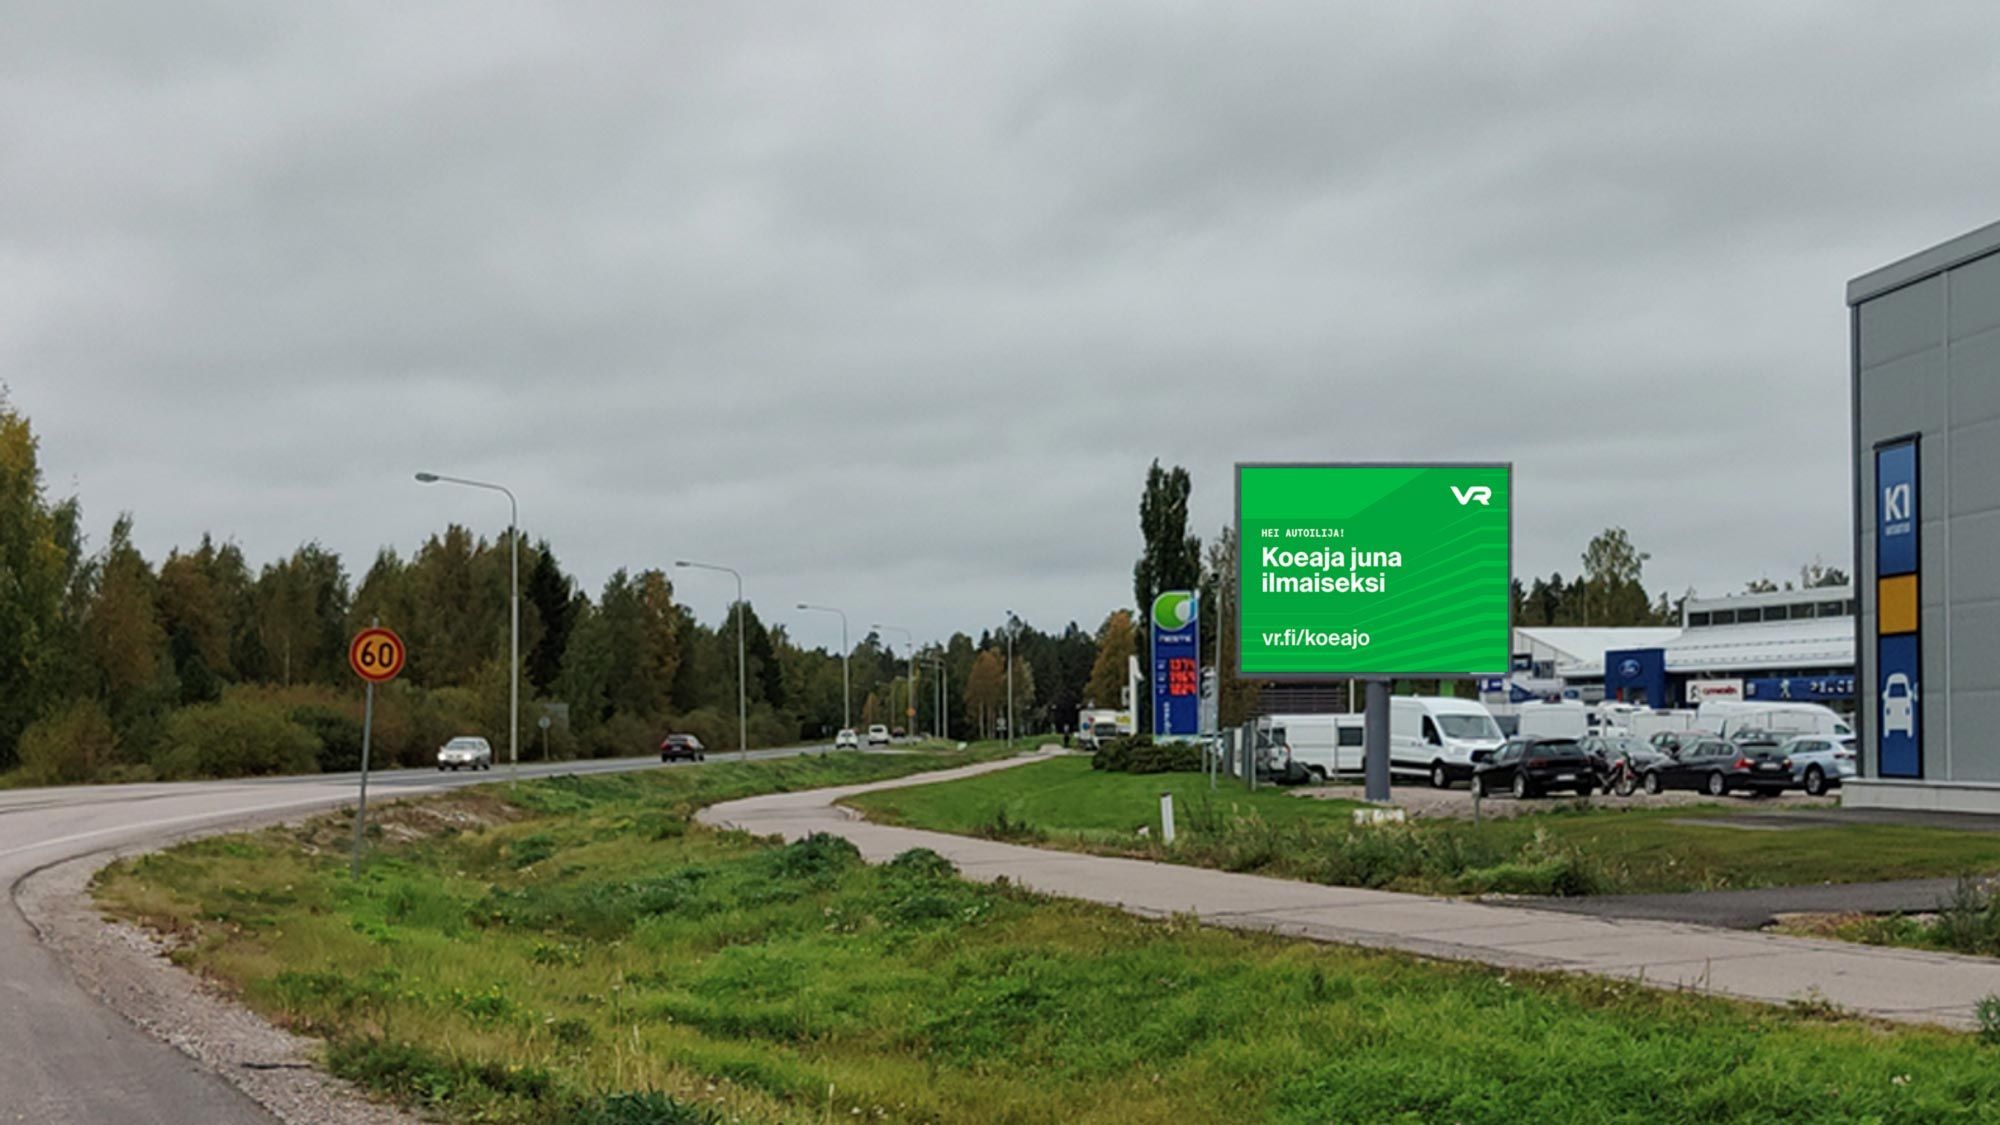 Picture of screen in Järvenpää Pohjoisväylä